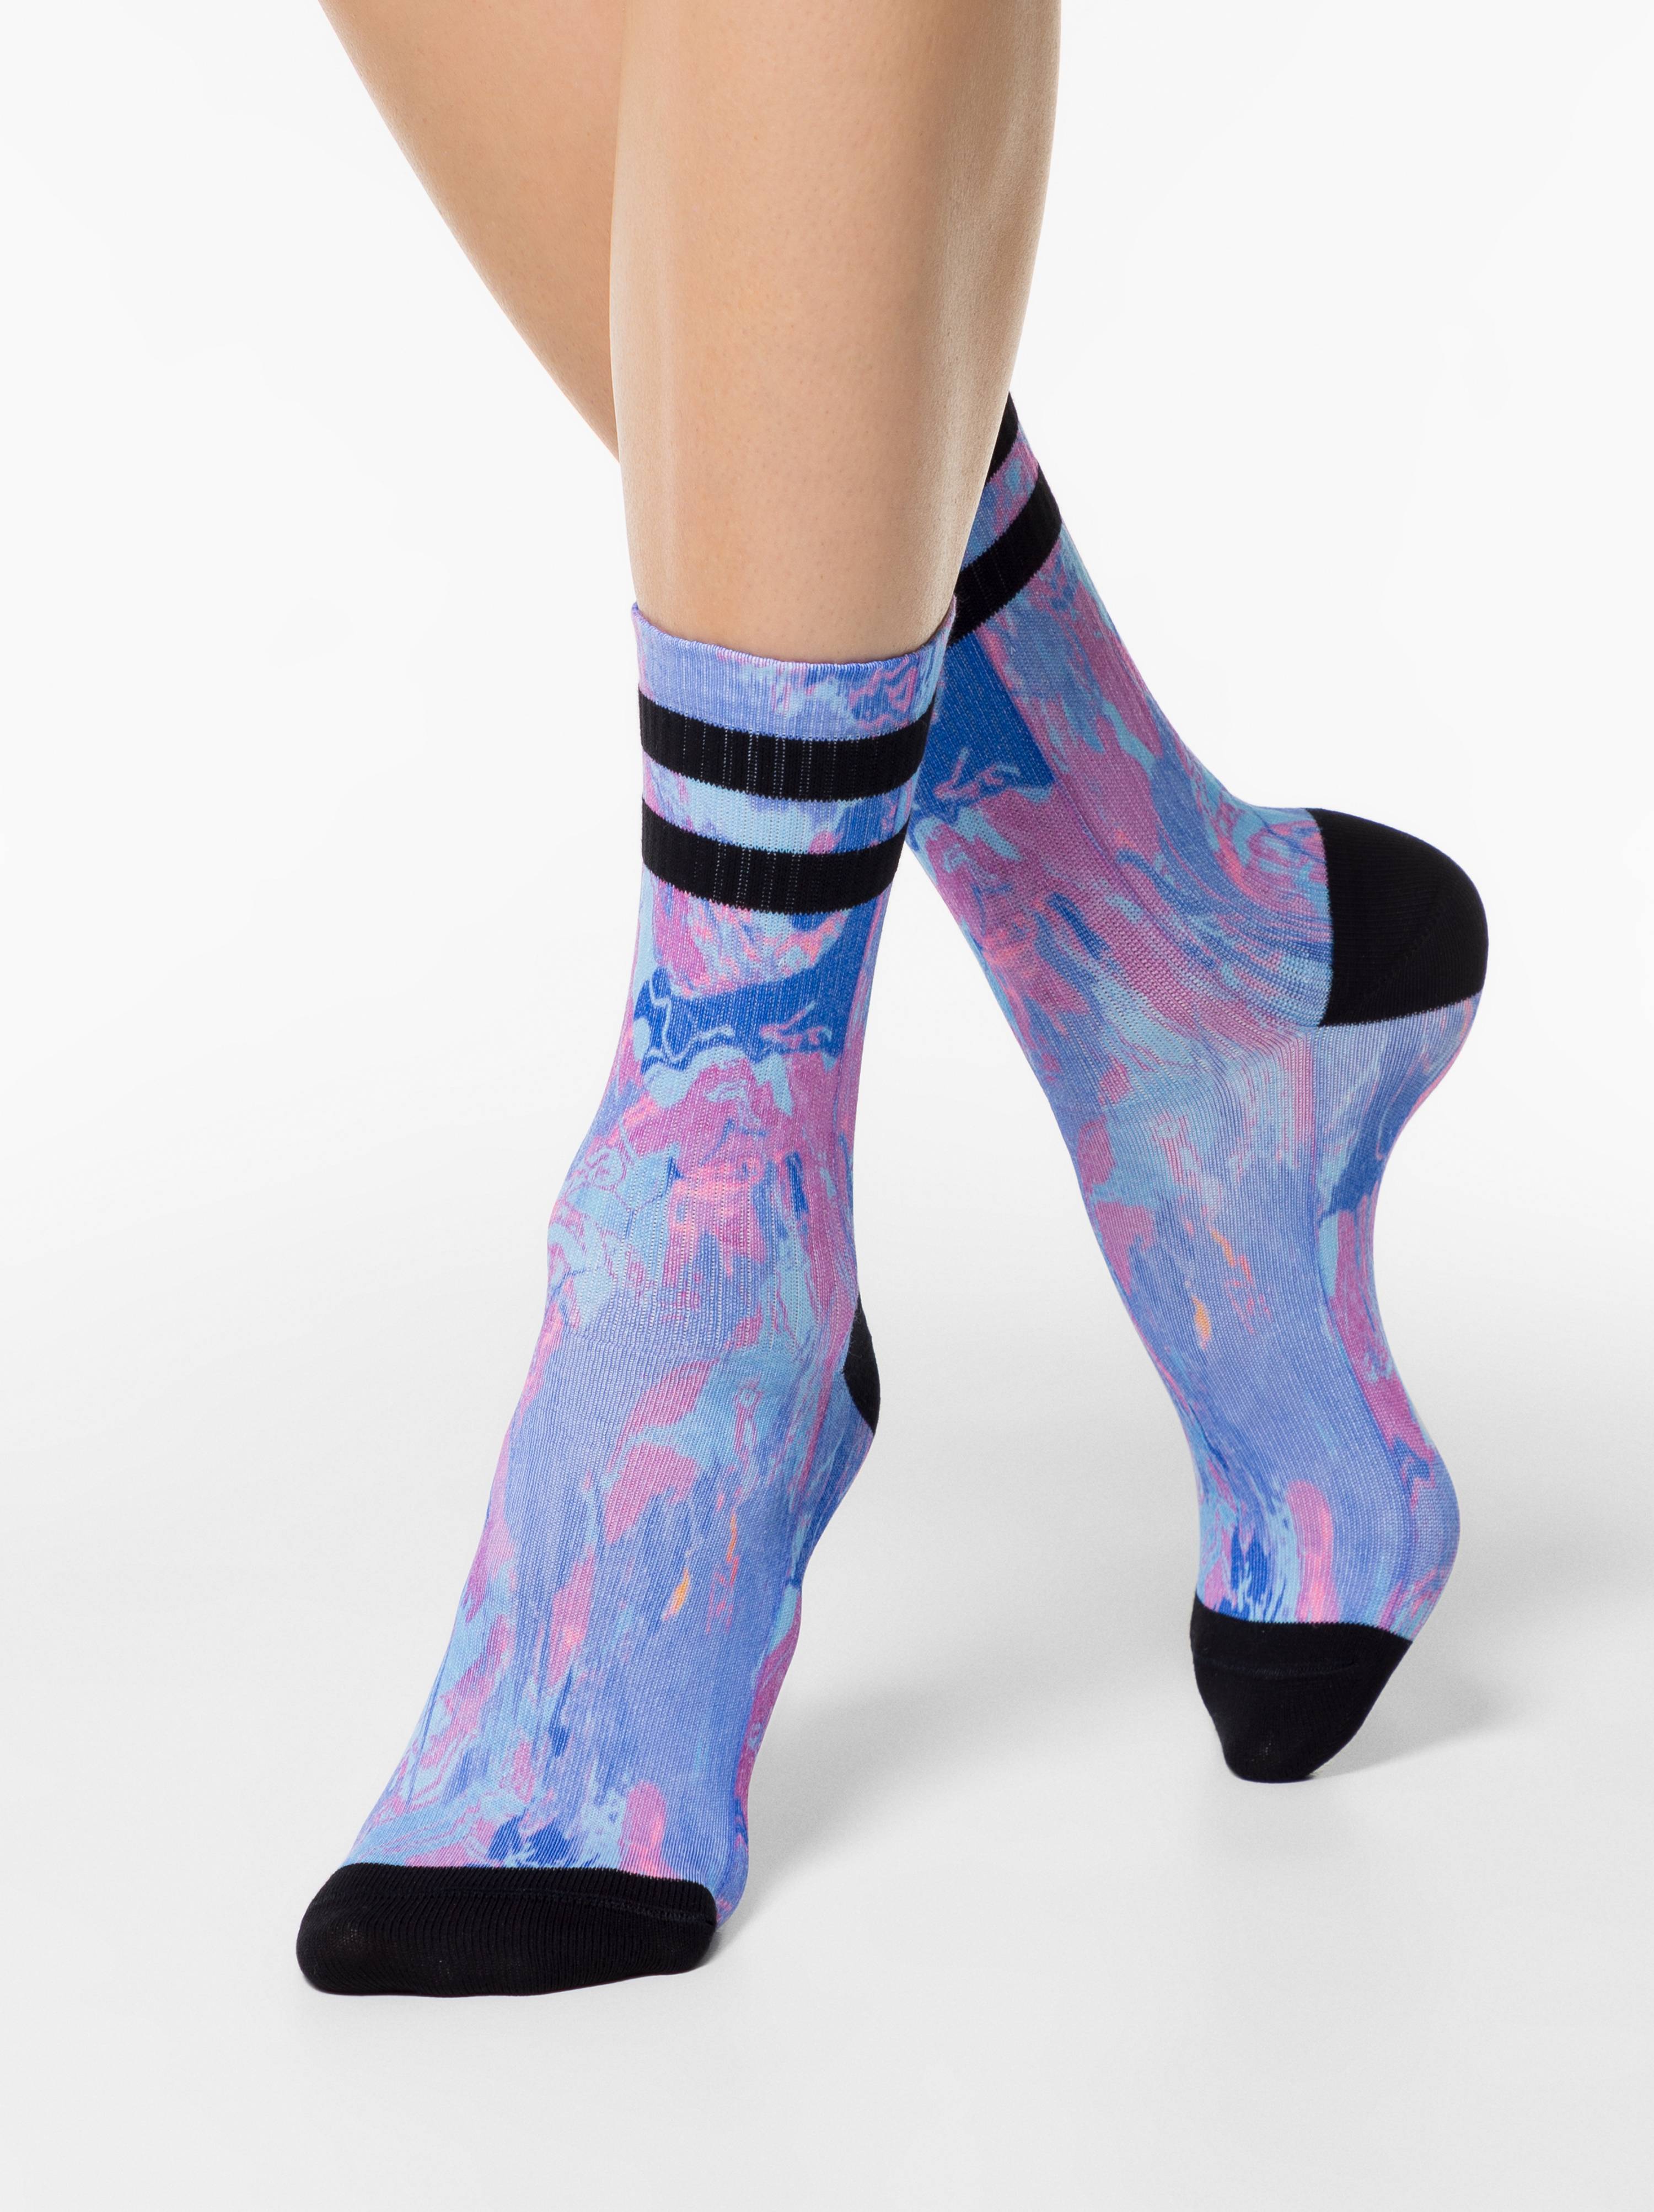 Удлиненные носки. Удлиненные носки женские. Вытянутые носки. Носки жен. Fantasy 20с-12/1сп. Носки под лифчик.